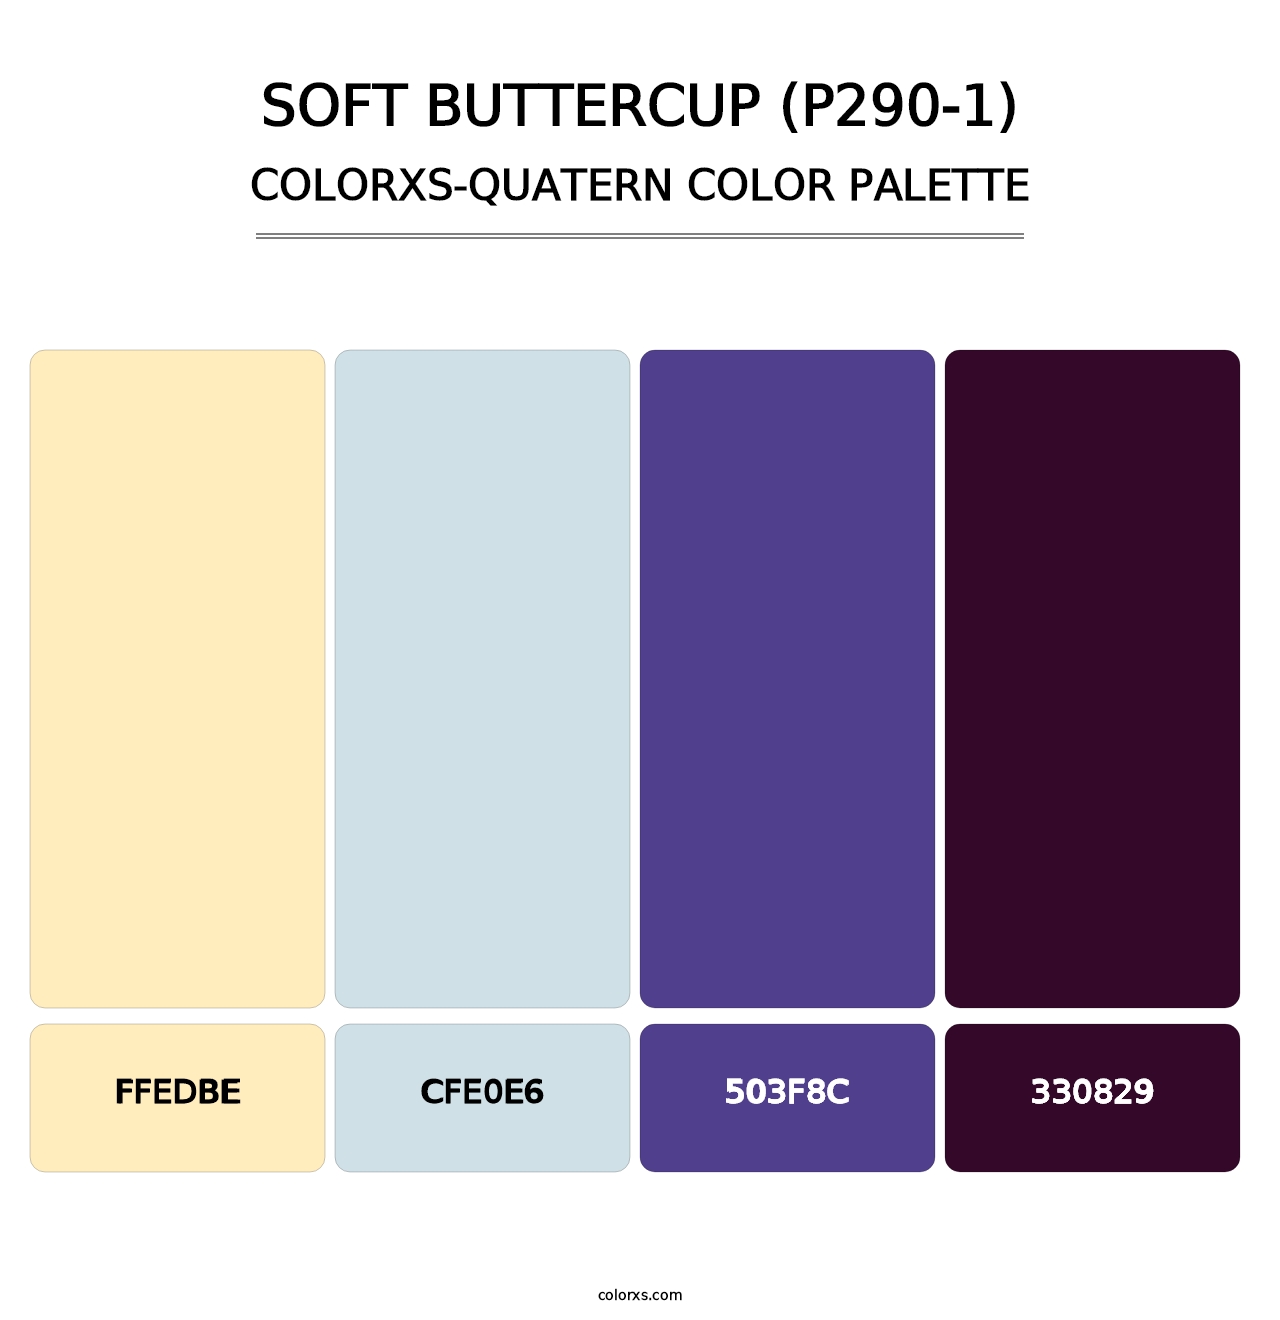 Soft Buttercup (P290-1) - Colorxs Quatern Palette